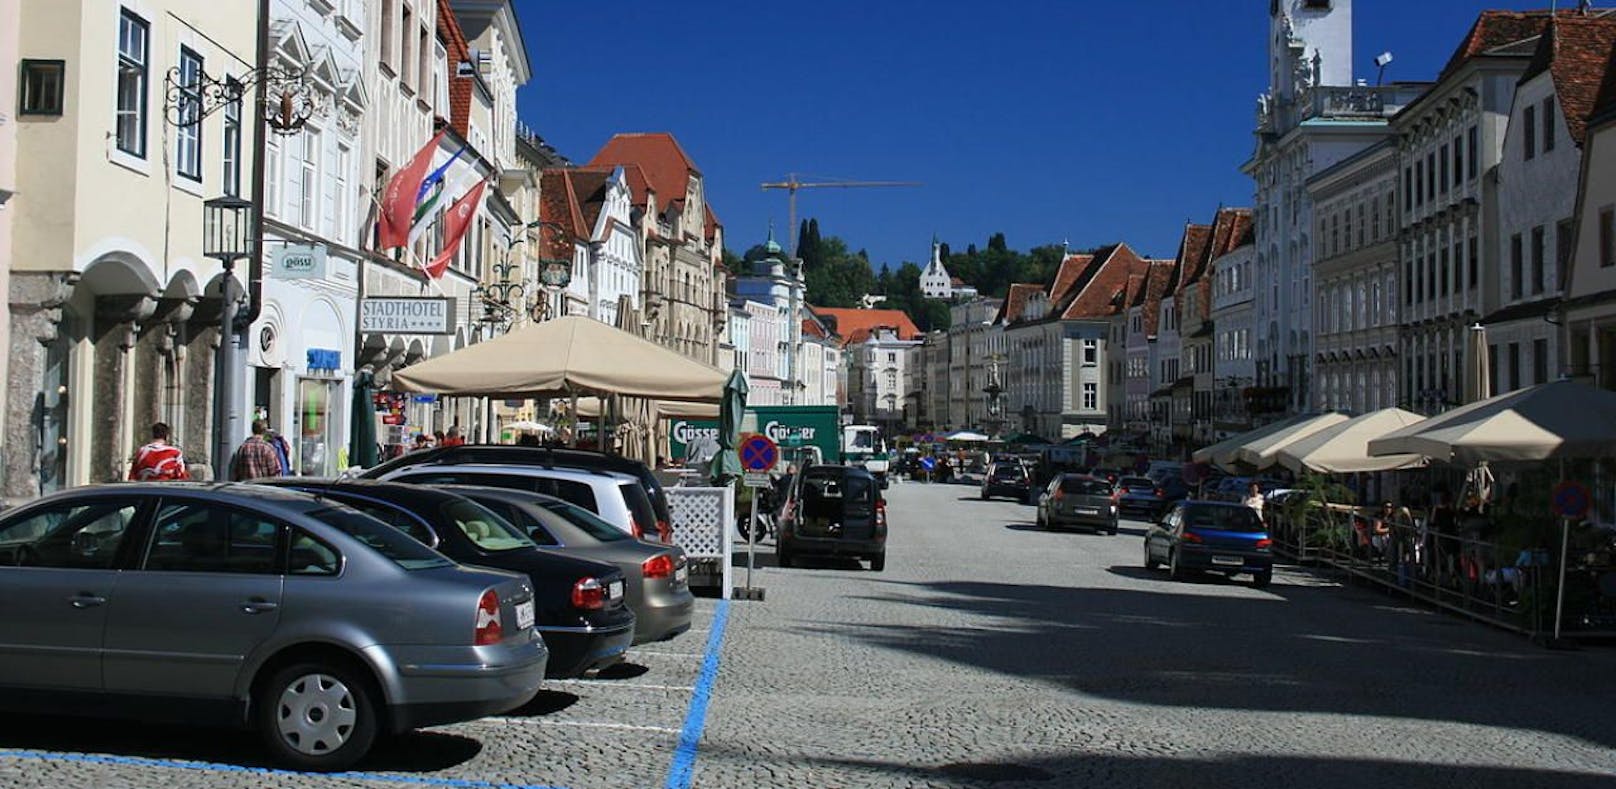 Am Stadtplatz von Steyr wird vieles neu werden, wurde jetzt beschlossen. Baustart ist im Spätsommer.